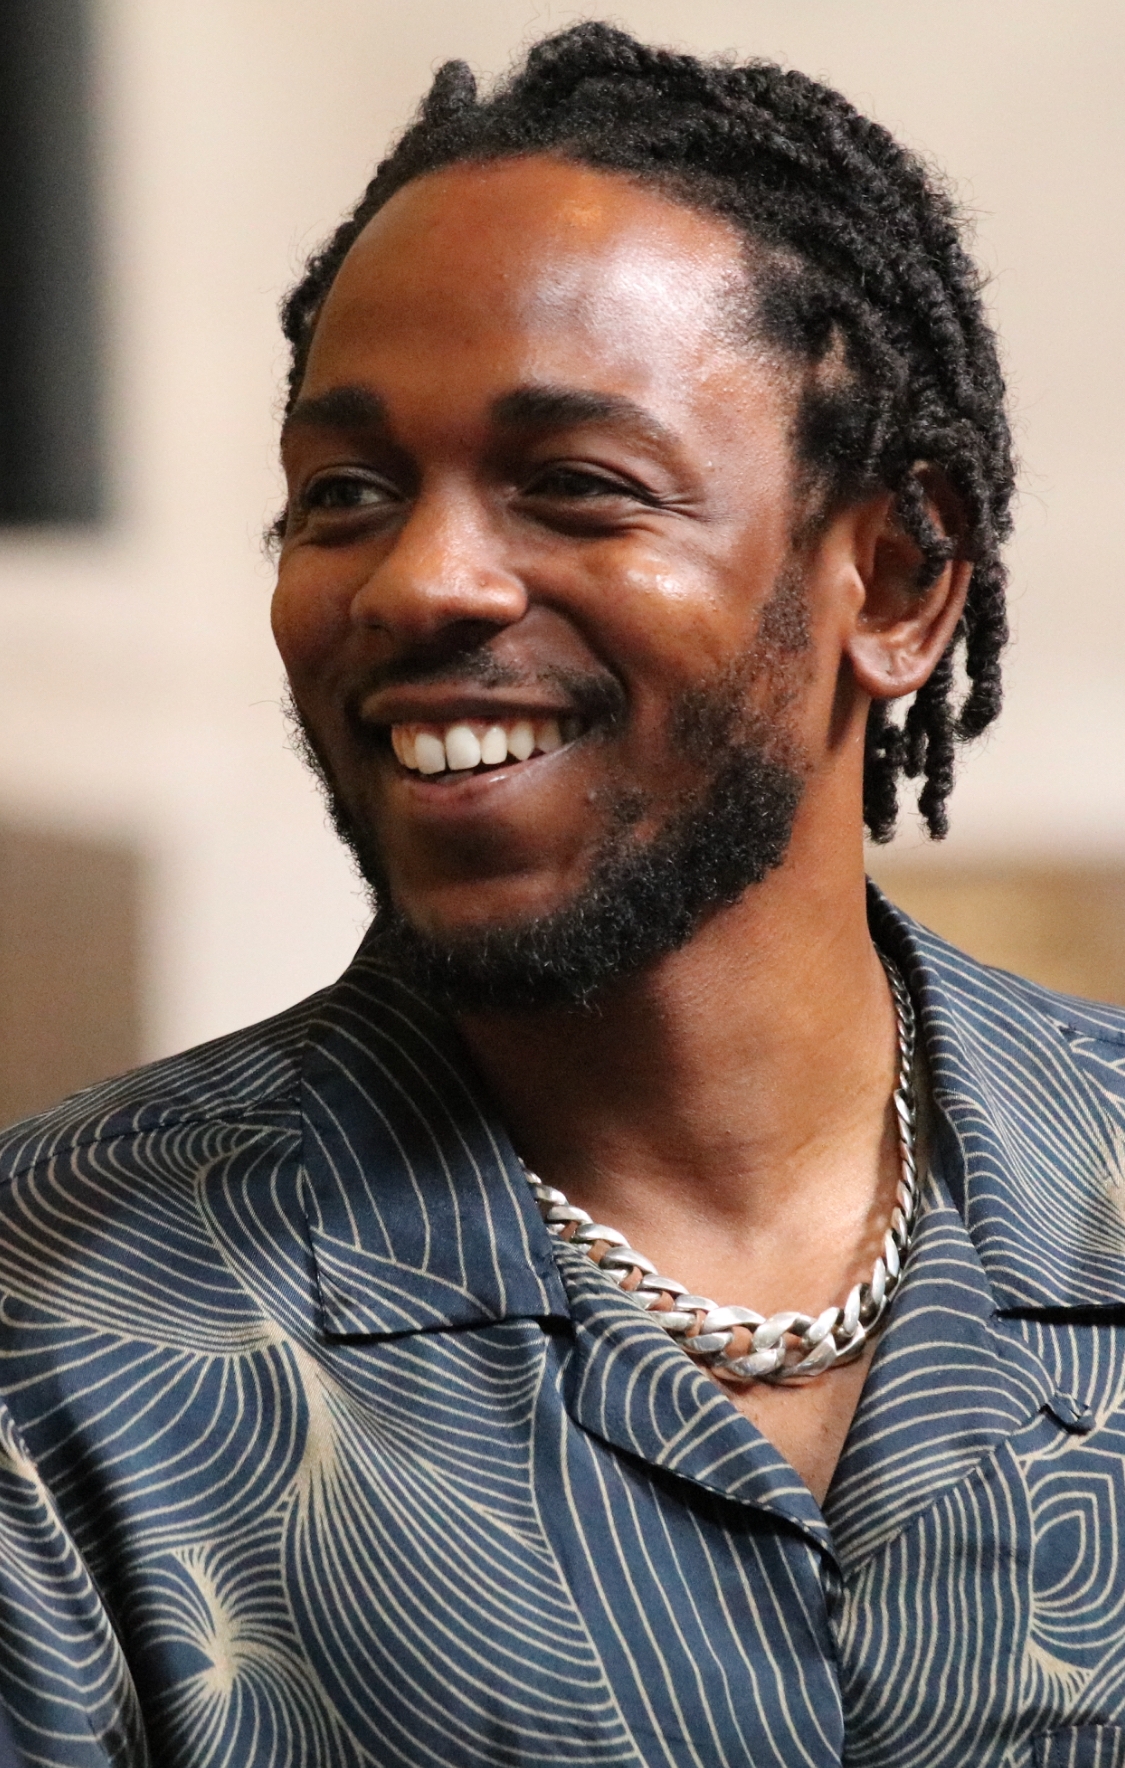 auteur Kendrick Lamar de la citation La meilleure chose est de toujours garder des gens honnêtes autour, car lorsque vous avez un tas d'hommes oui qui savent que vous faites une erreur, mais laissez-vous continuer, c'est à ce moment-là que cela ruine votre état d'esprit en tant qu'artiste.